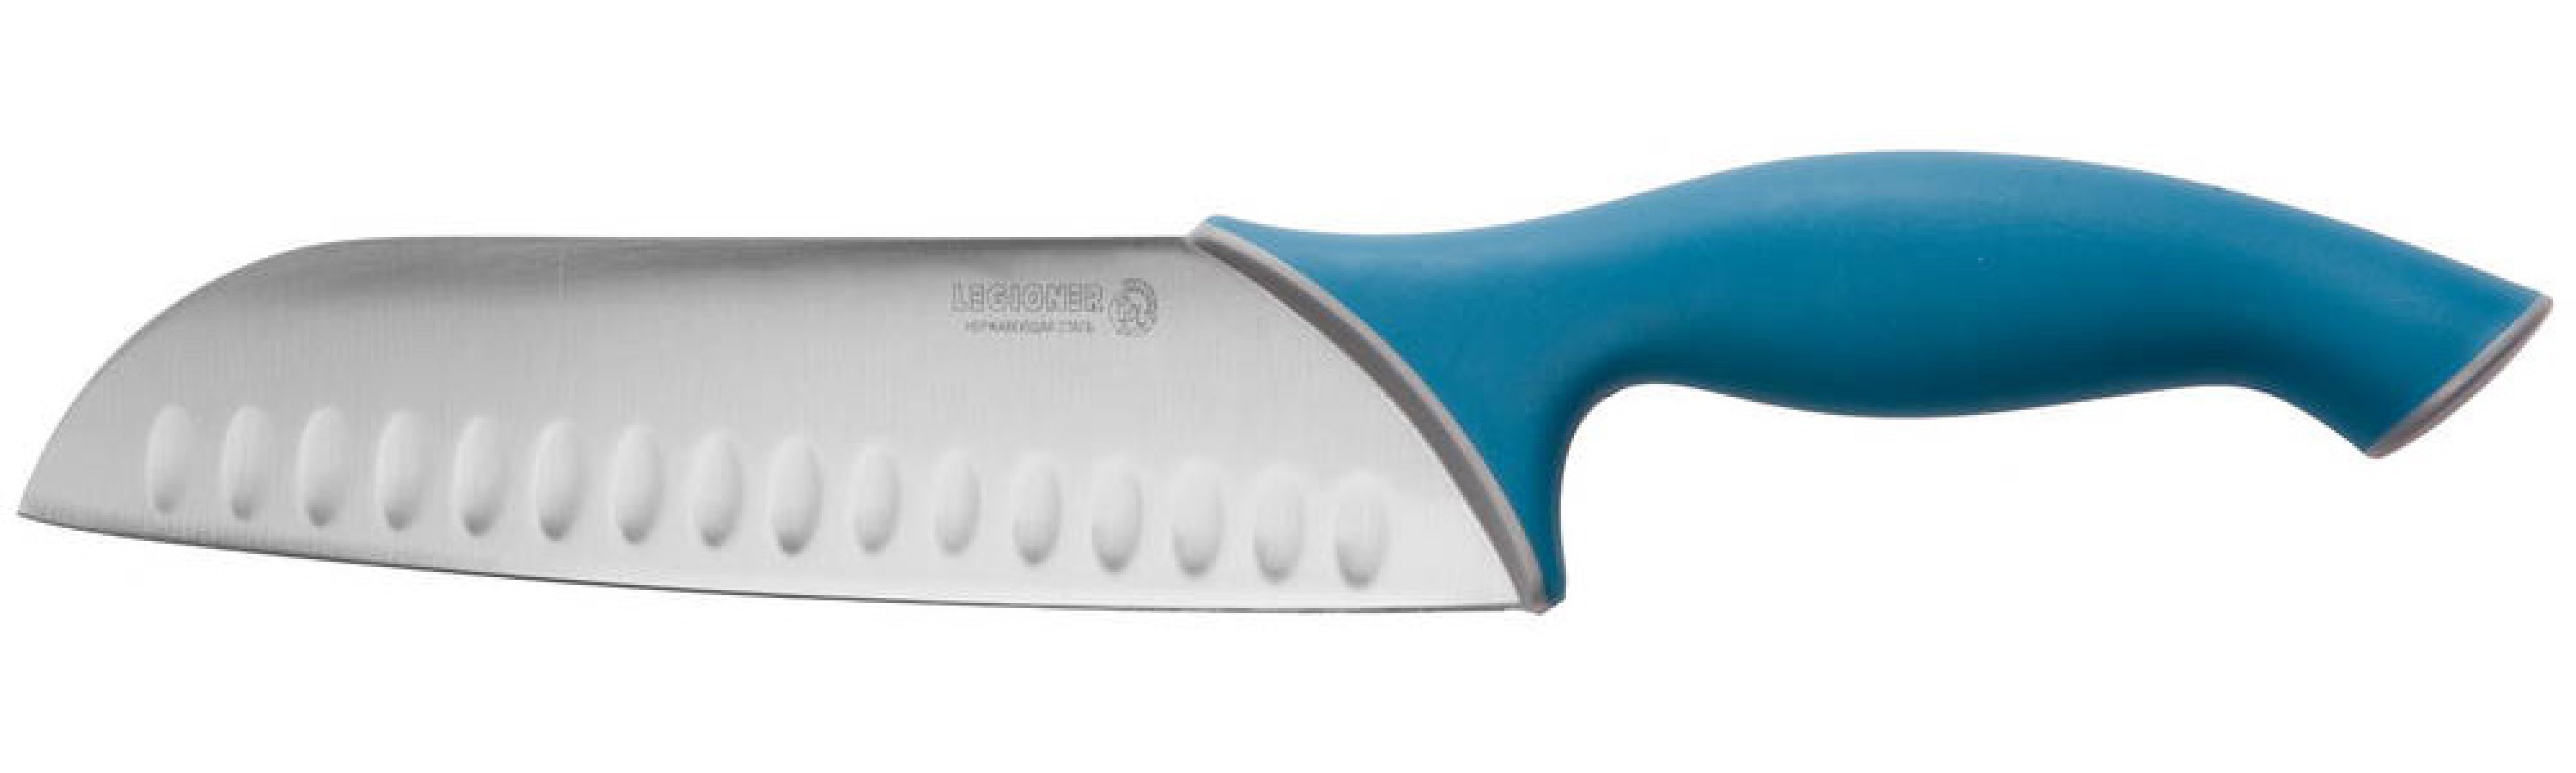 Нож Сантоку LEGIONER Italica 190 мм нержавеющее лезвие эргономичная рукоятка (47966)